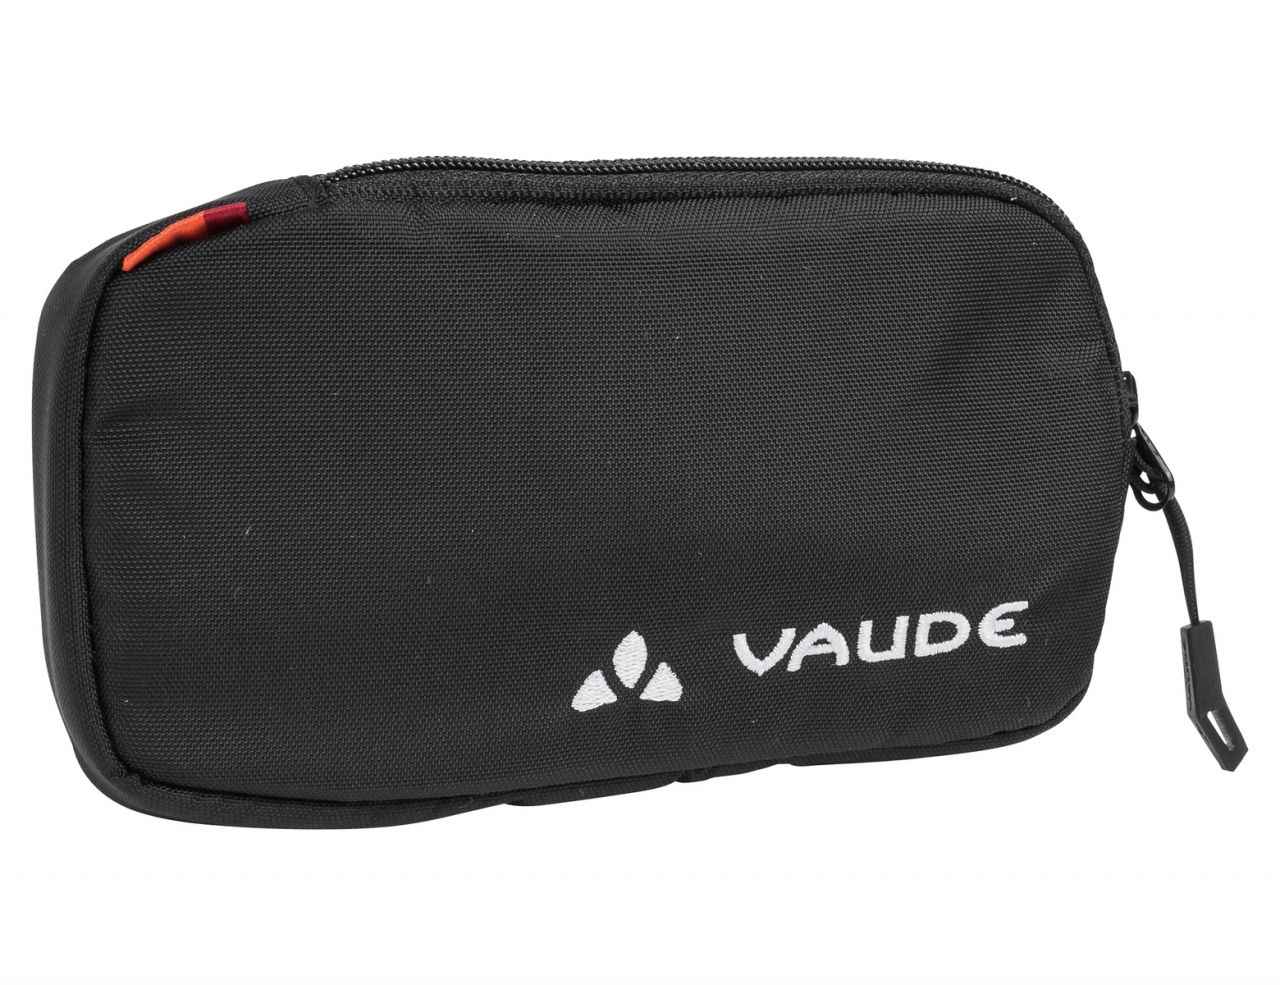 EPOC M Smartphonetasche mit Reissverschluss - Hauptansicht